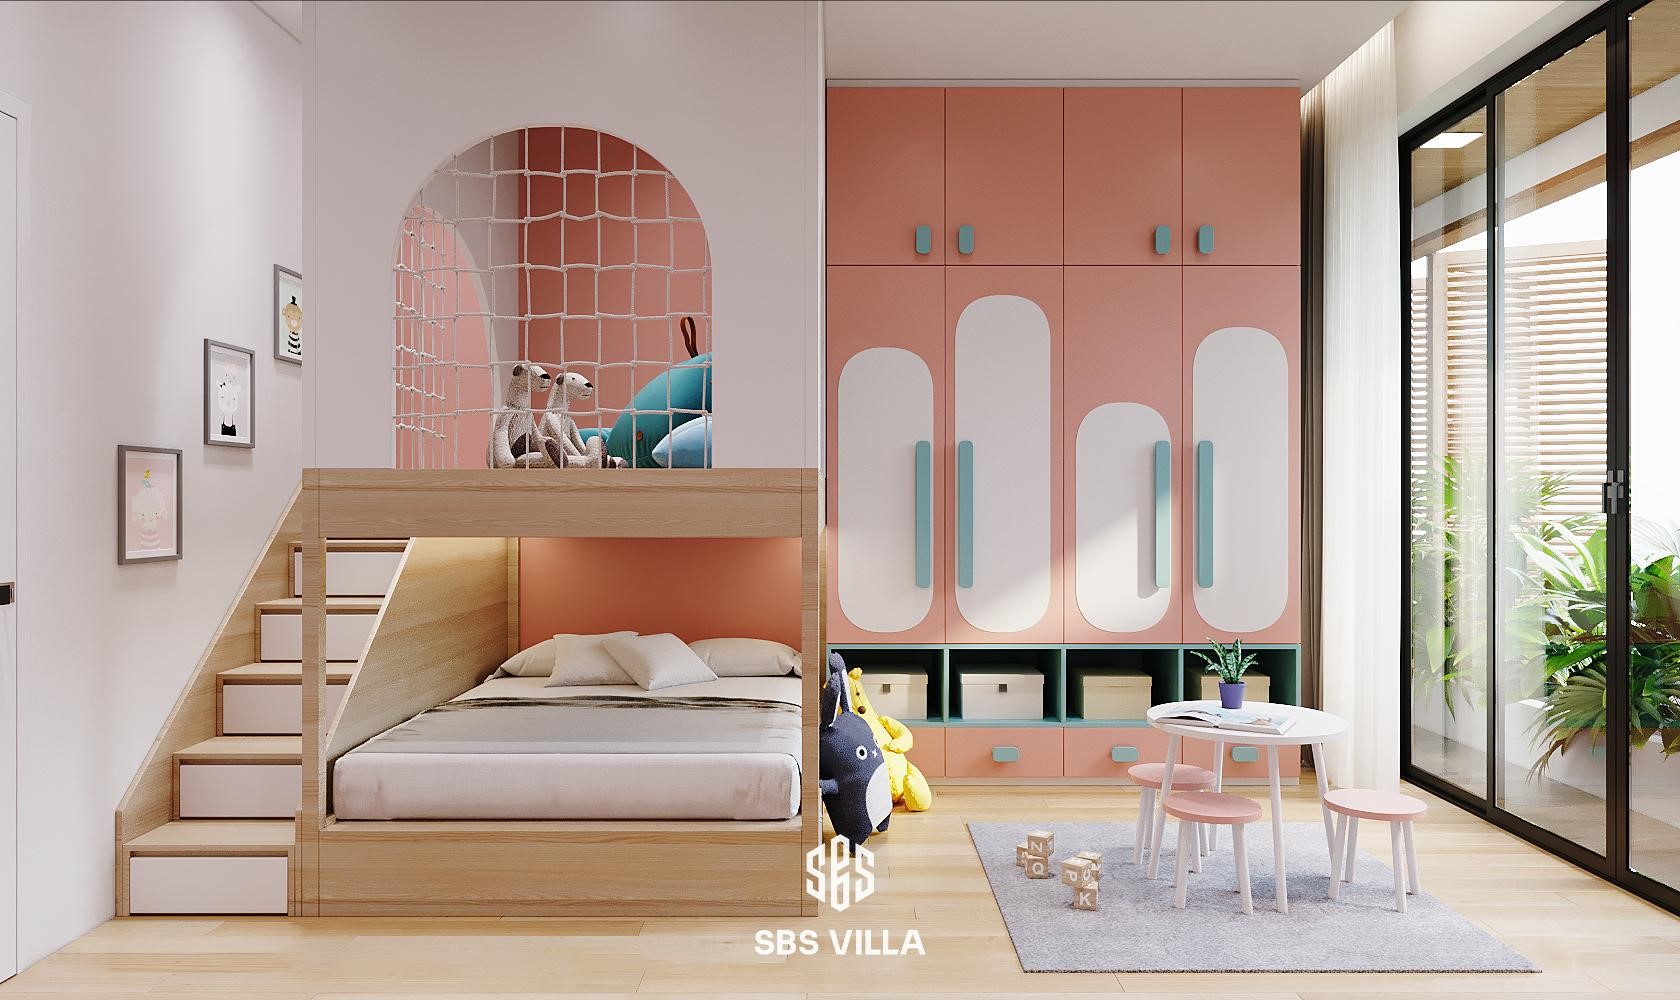 Không gian phòng ngủ cho bé được thiết kế khoa học